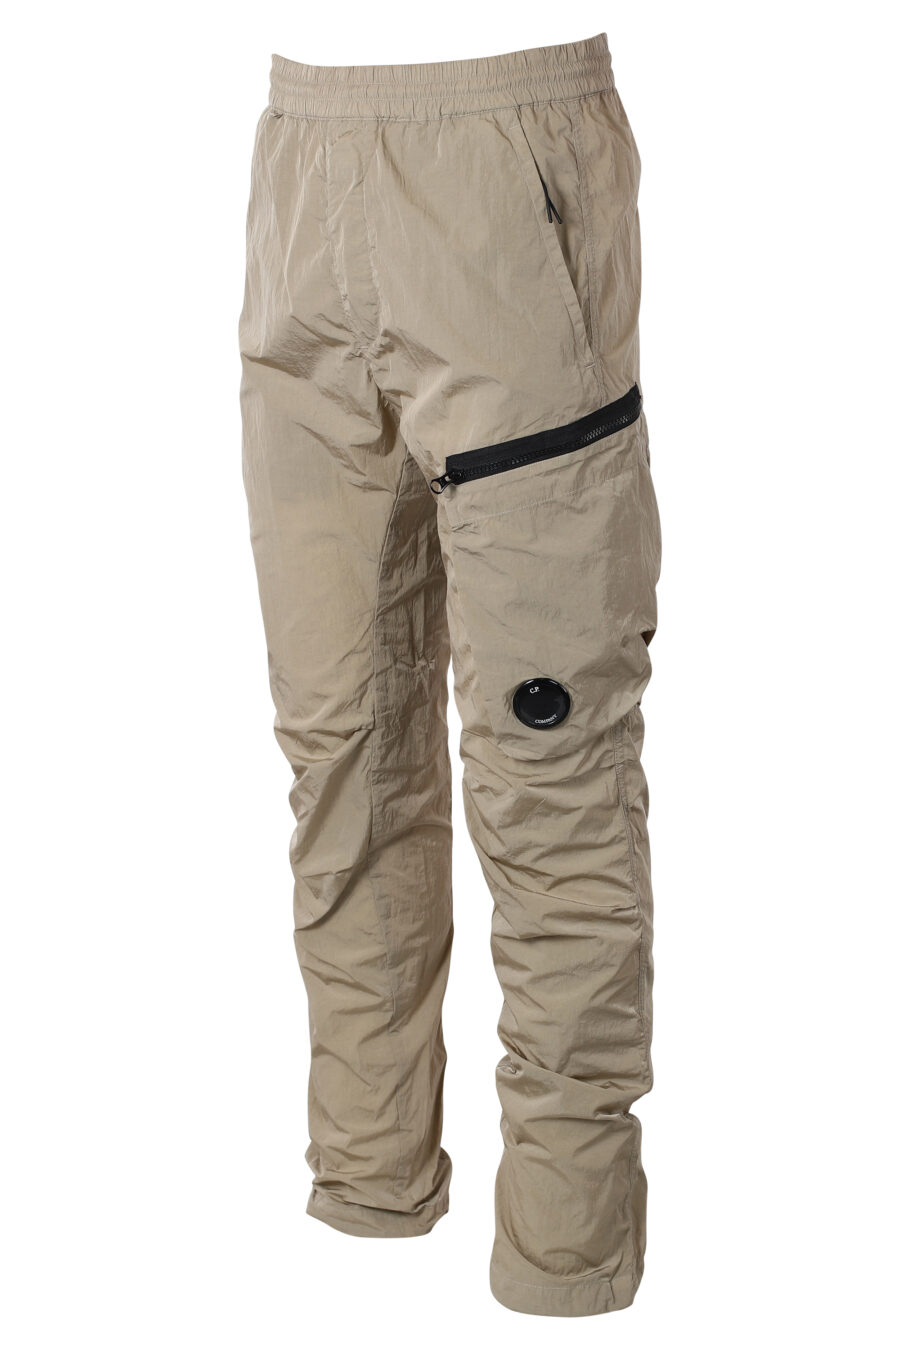 C.P. Company - Pantalón beige con bolsillo lateral diagonal y